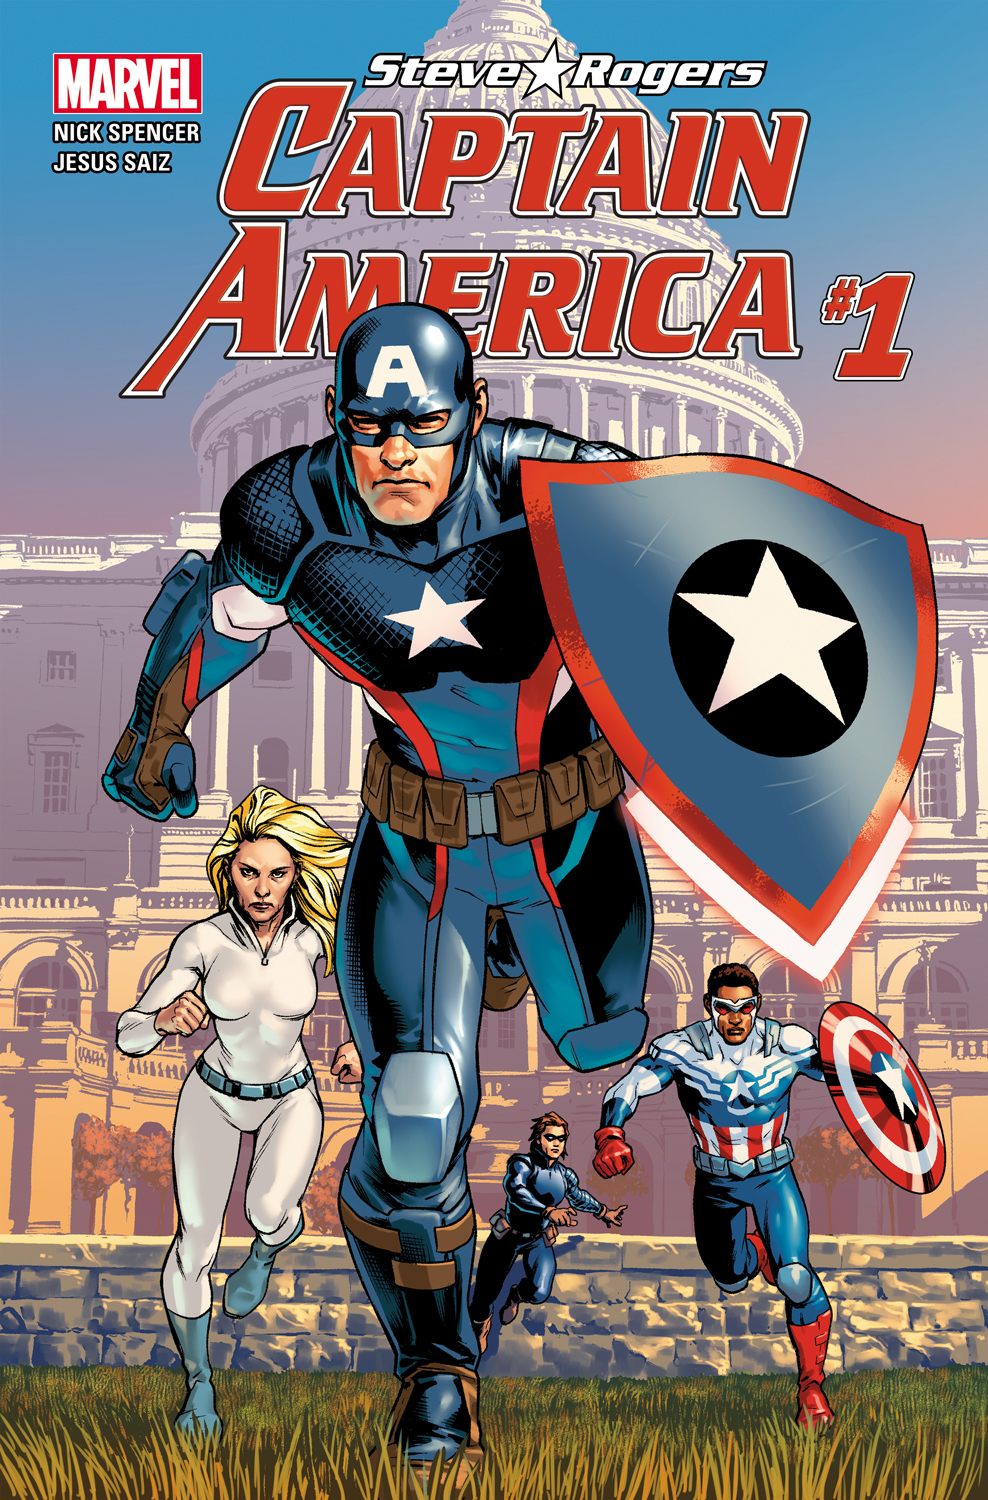 Steve Rogers: Captain America #1!